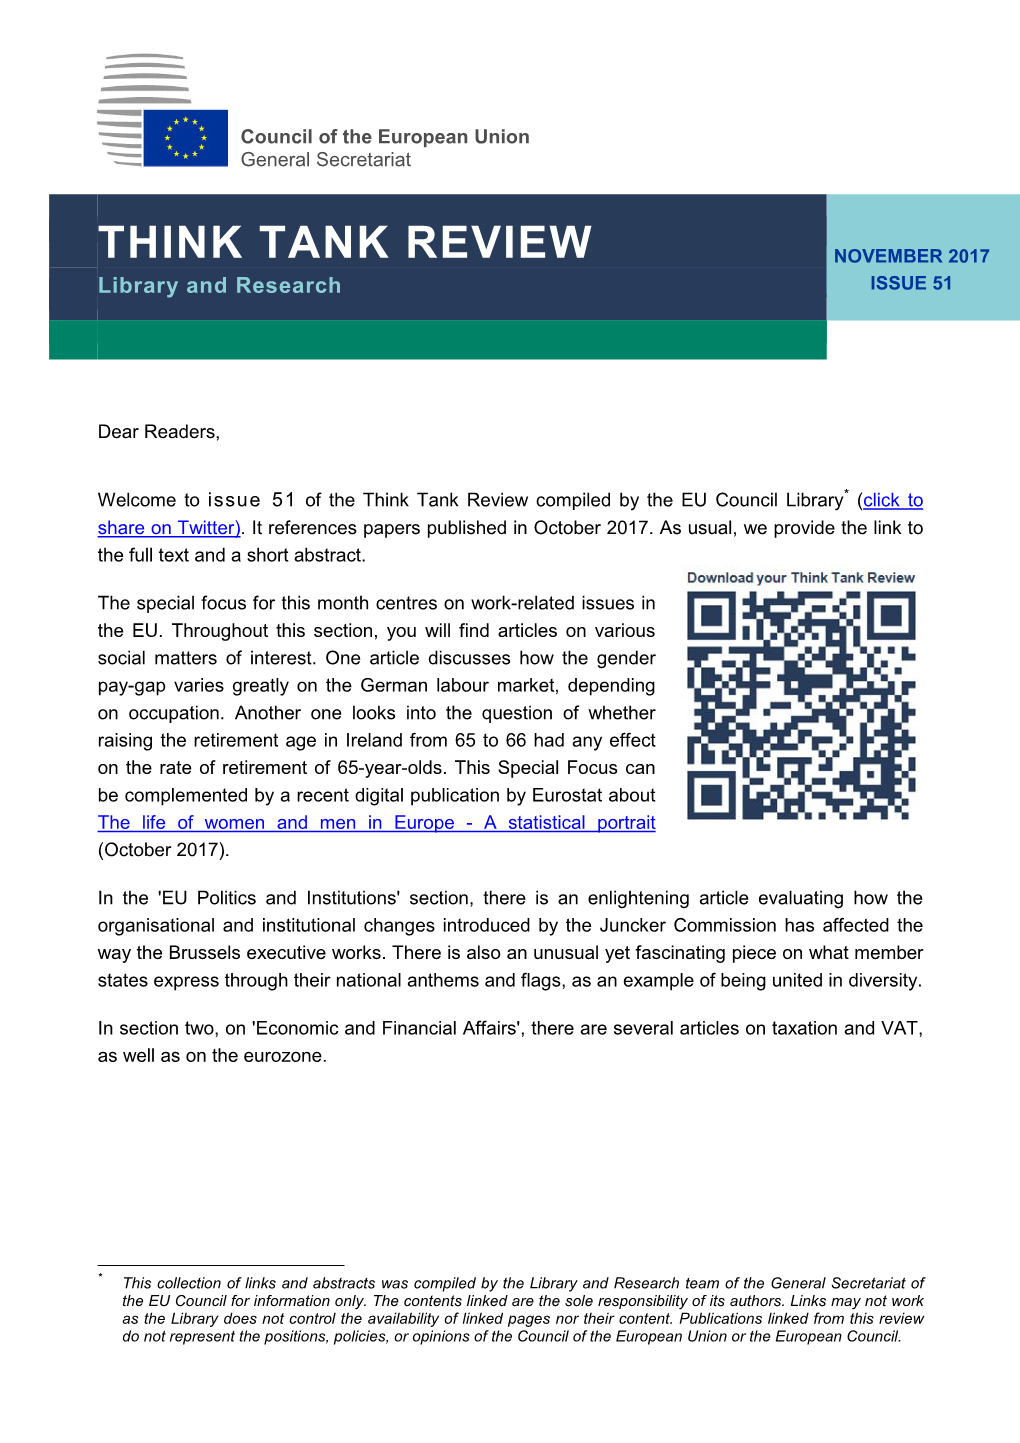 Think Tank Review November 2017